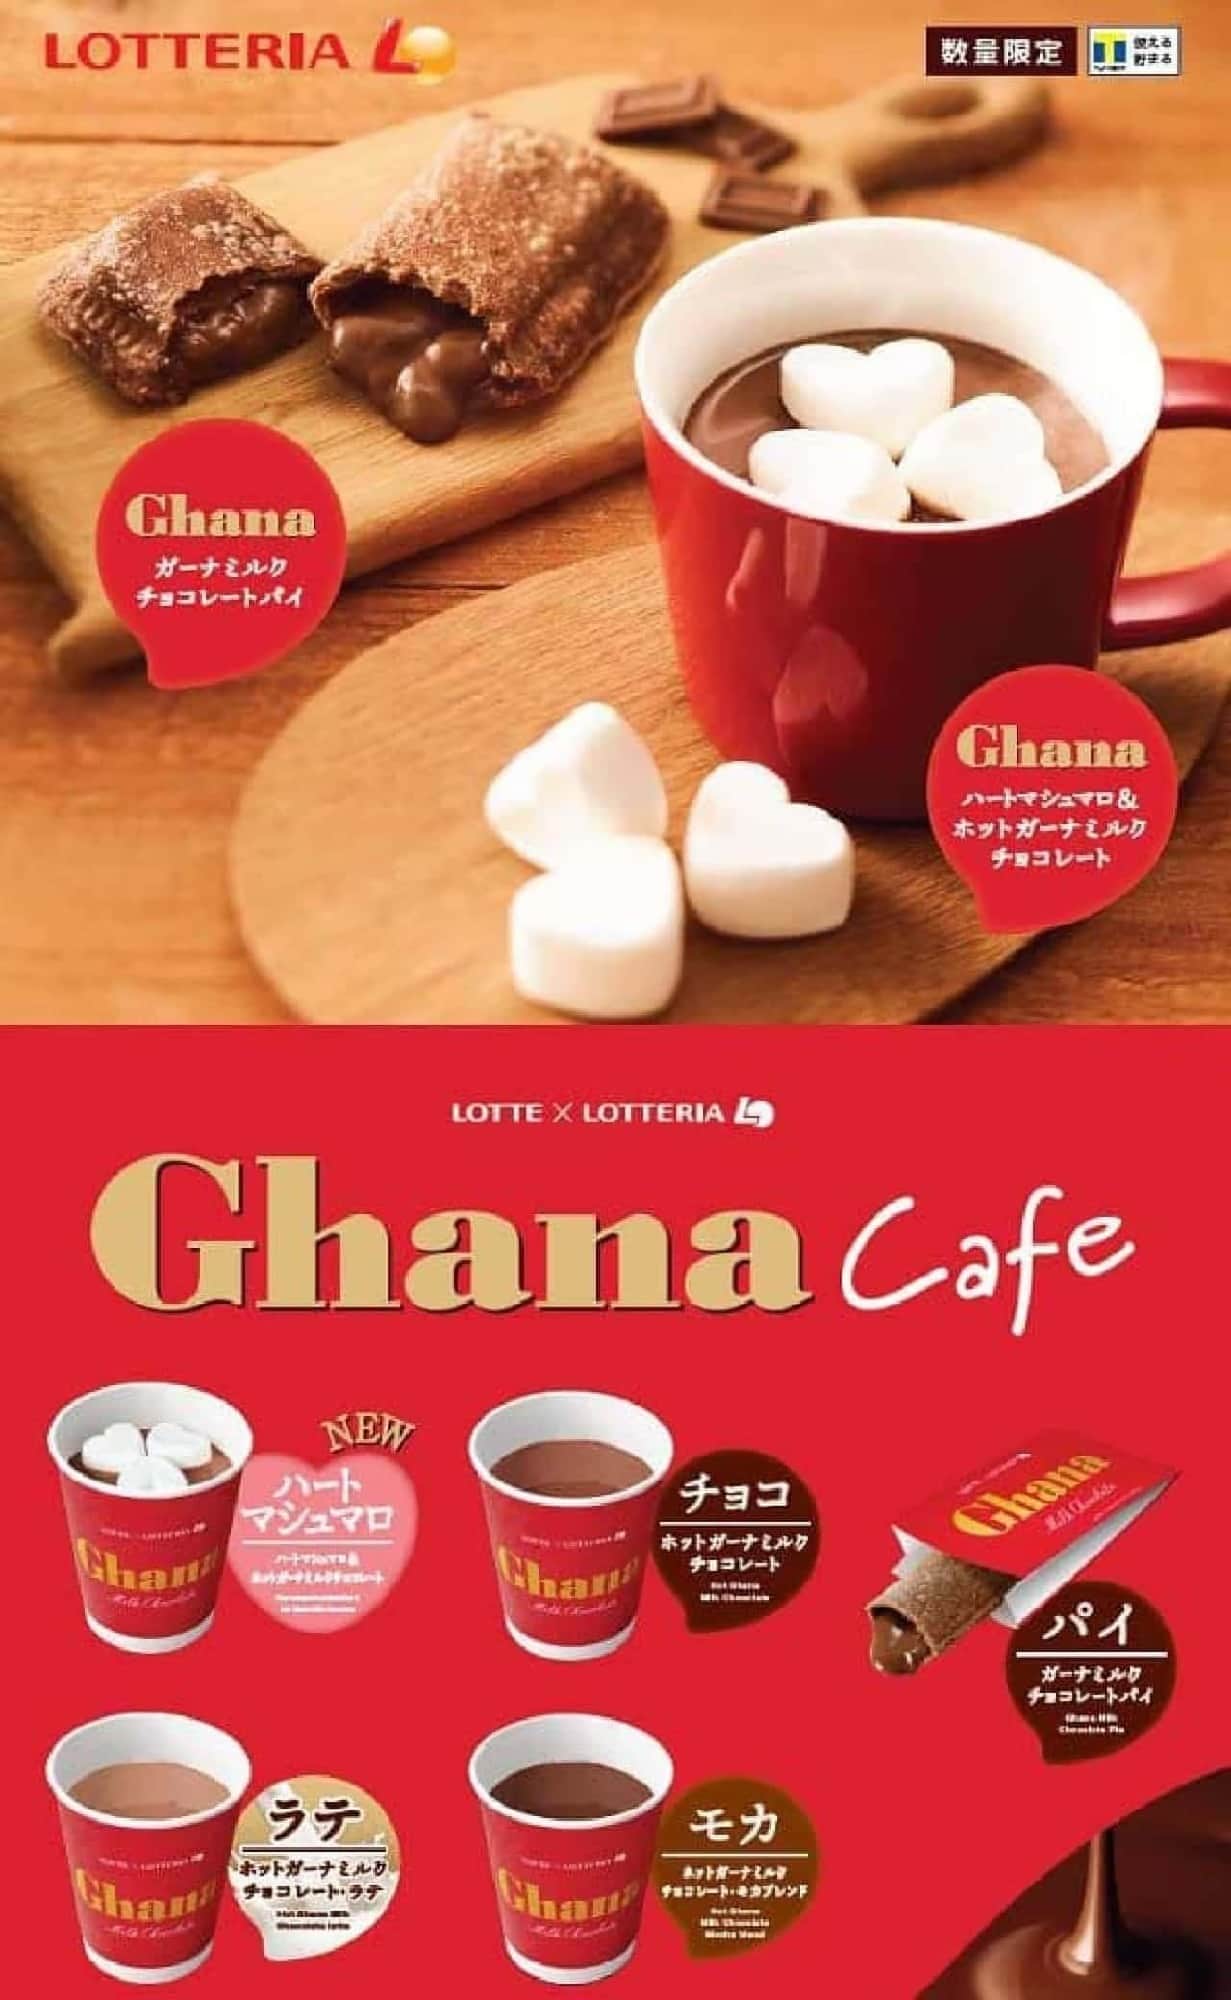 Lotteria Ghana Cafe